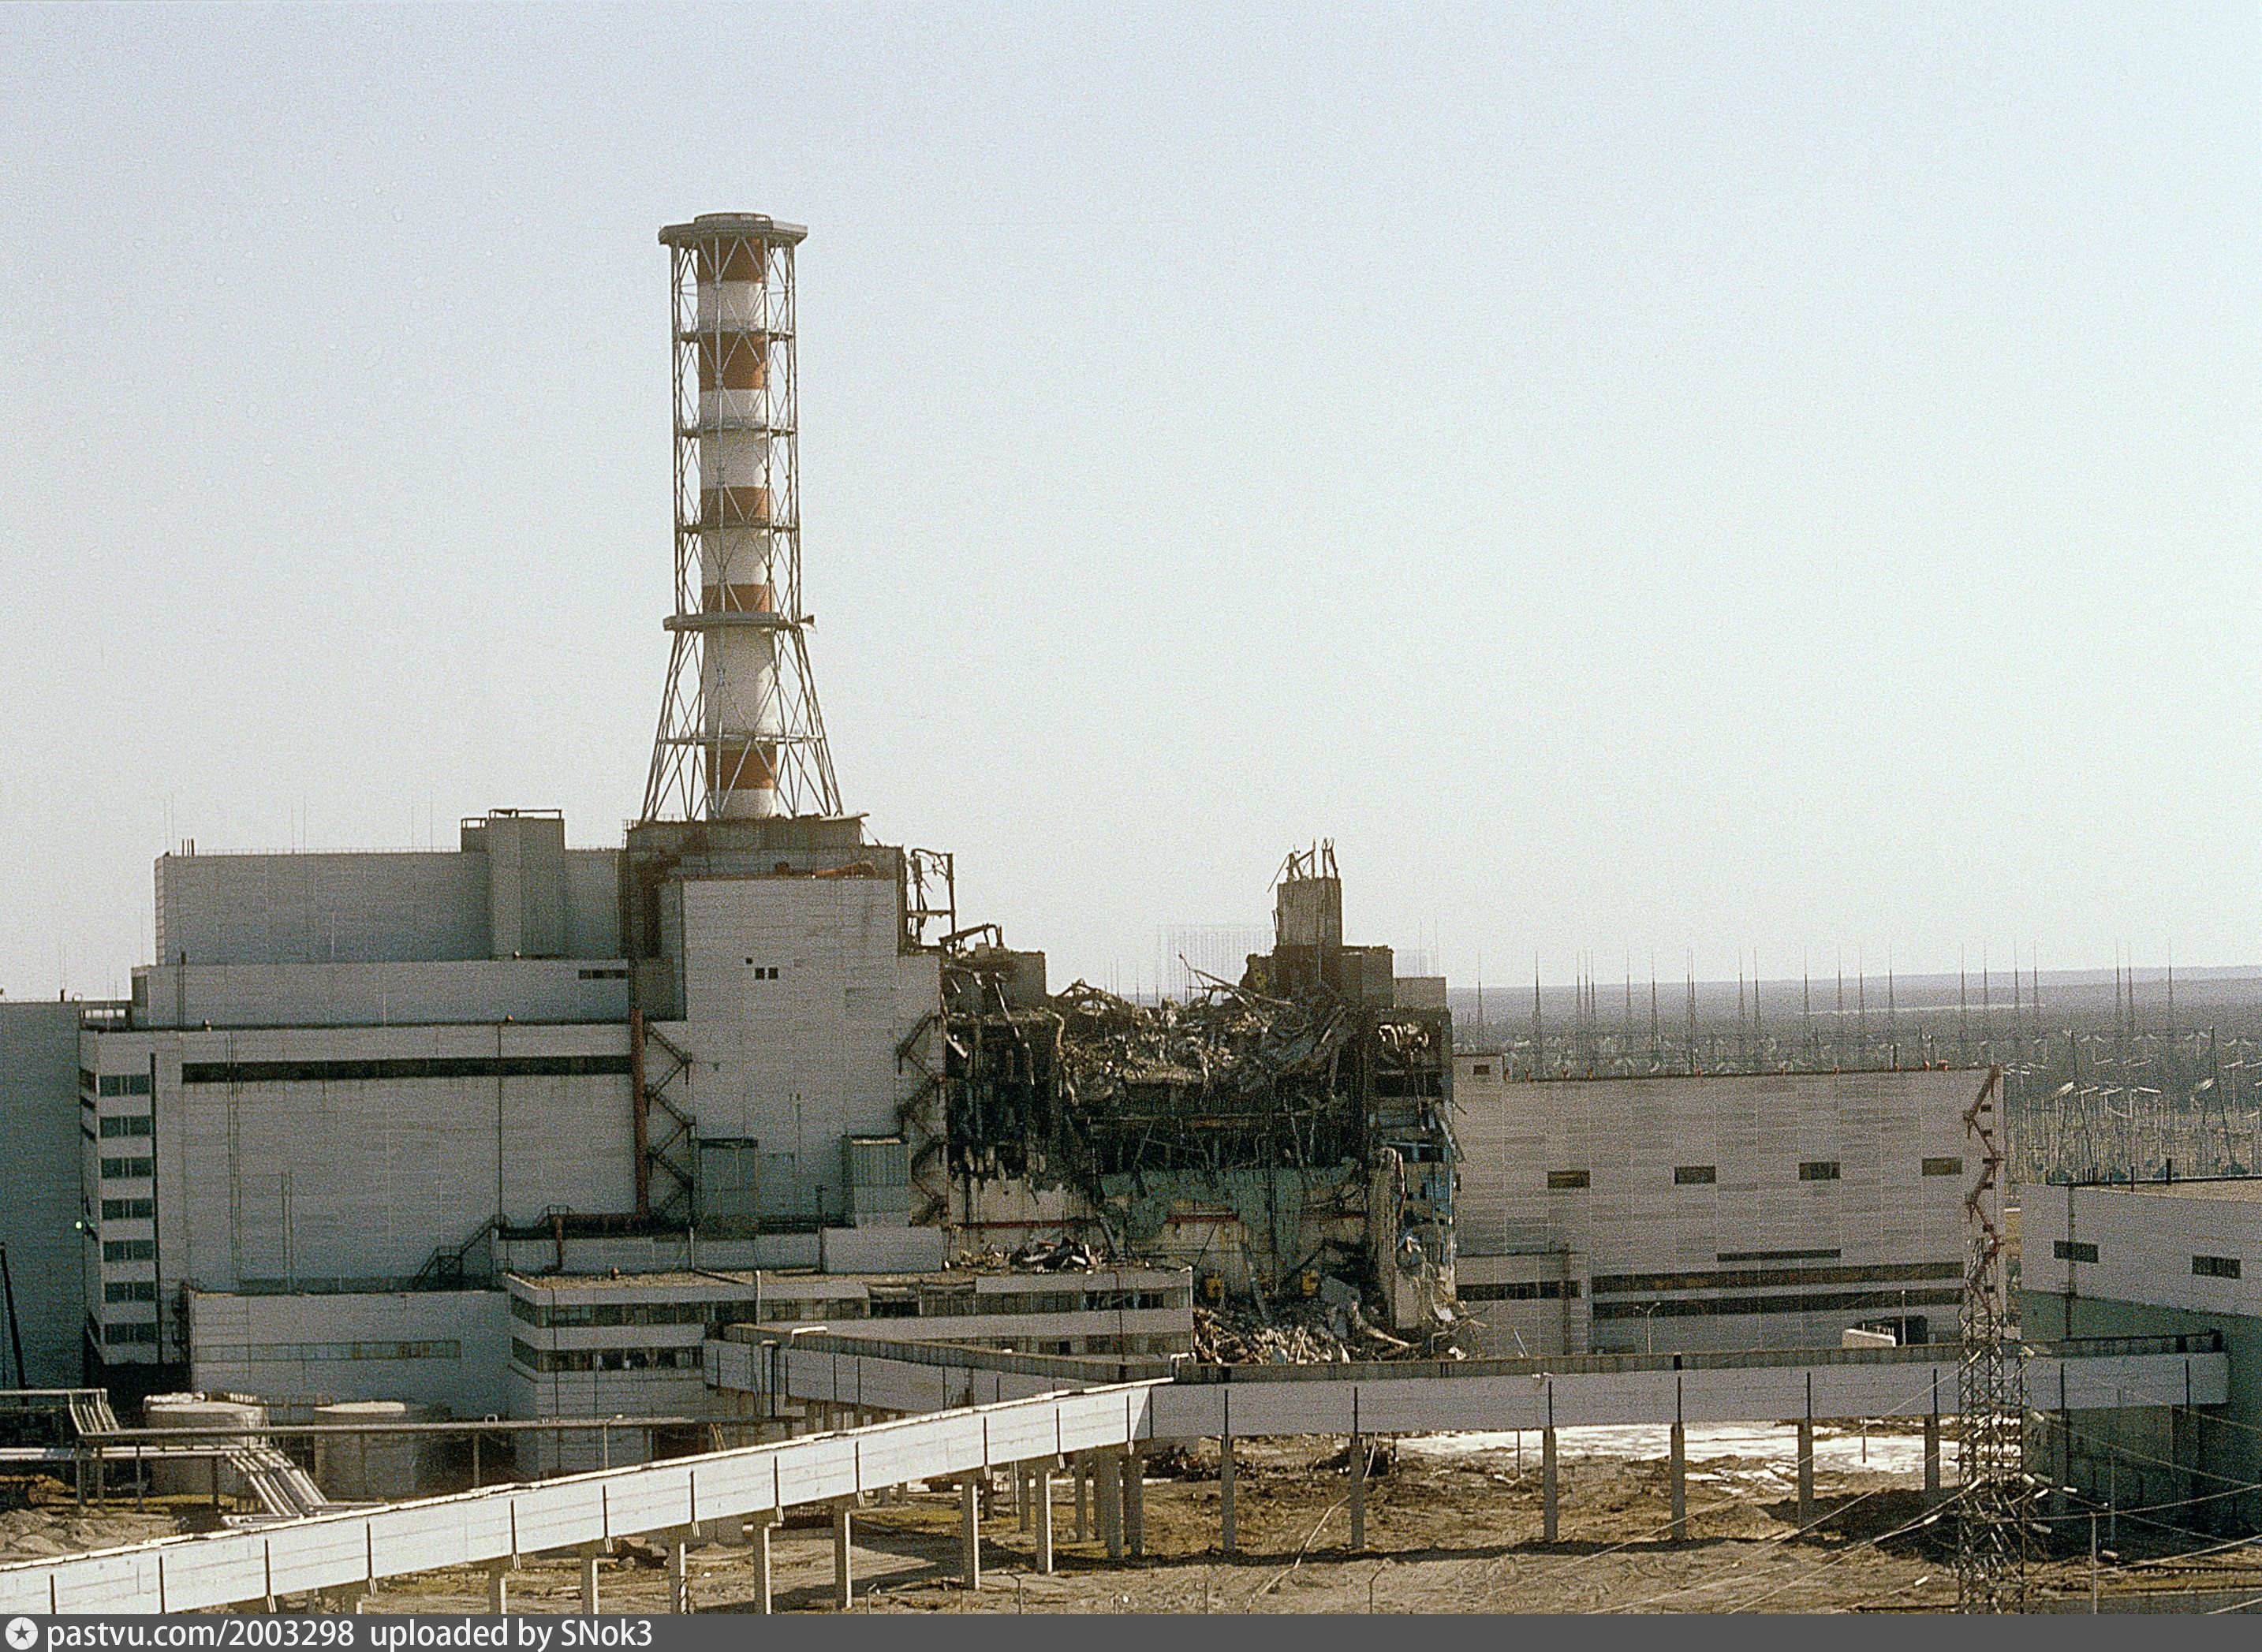 Черно аэс. Чернобыльская АЭС 1986. 4 Энергоблок ЧАЭС 1986. Чернобыль АЭС до аварии 1986. Атомная электростанция Чернобыль 4 энергоблок.